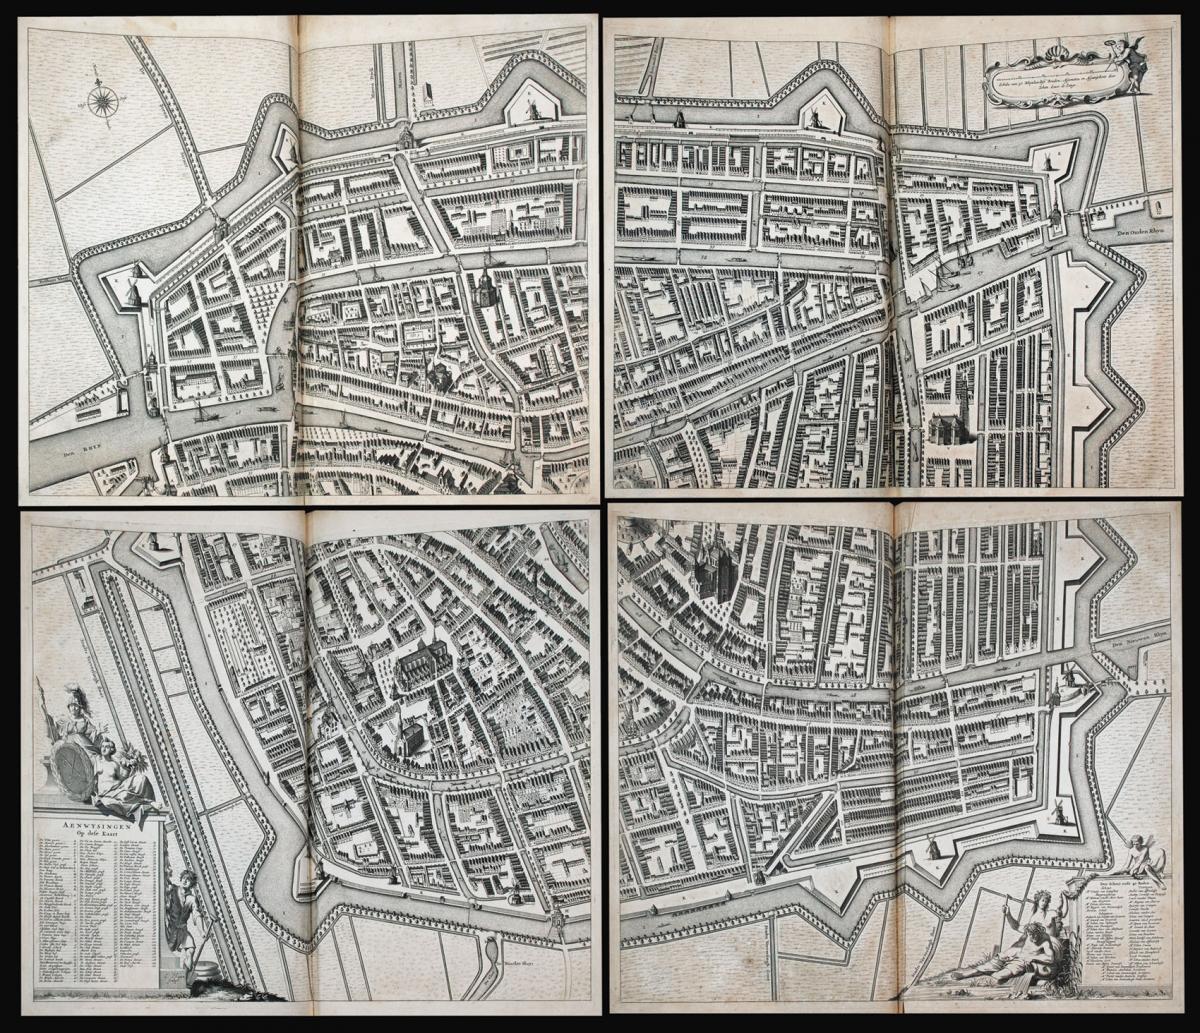 A fine composite atlas of Leiden